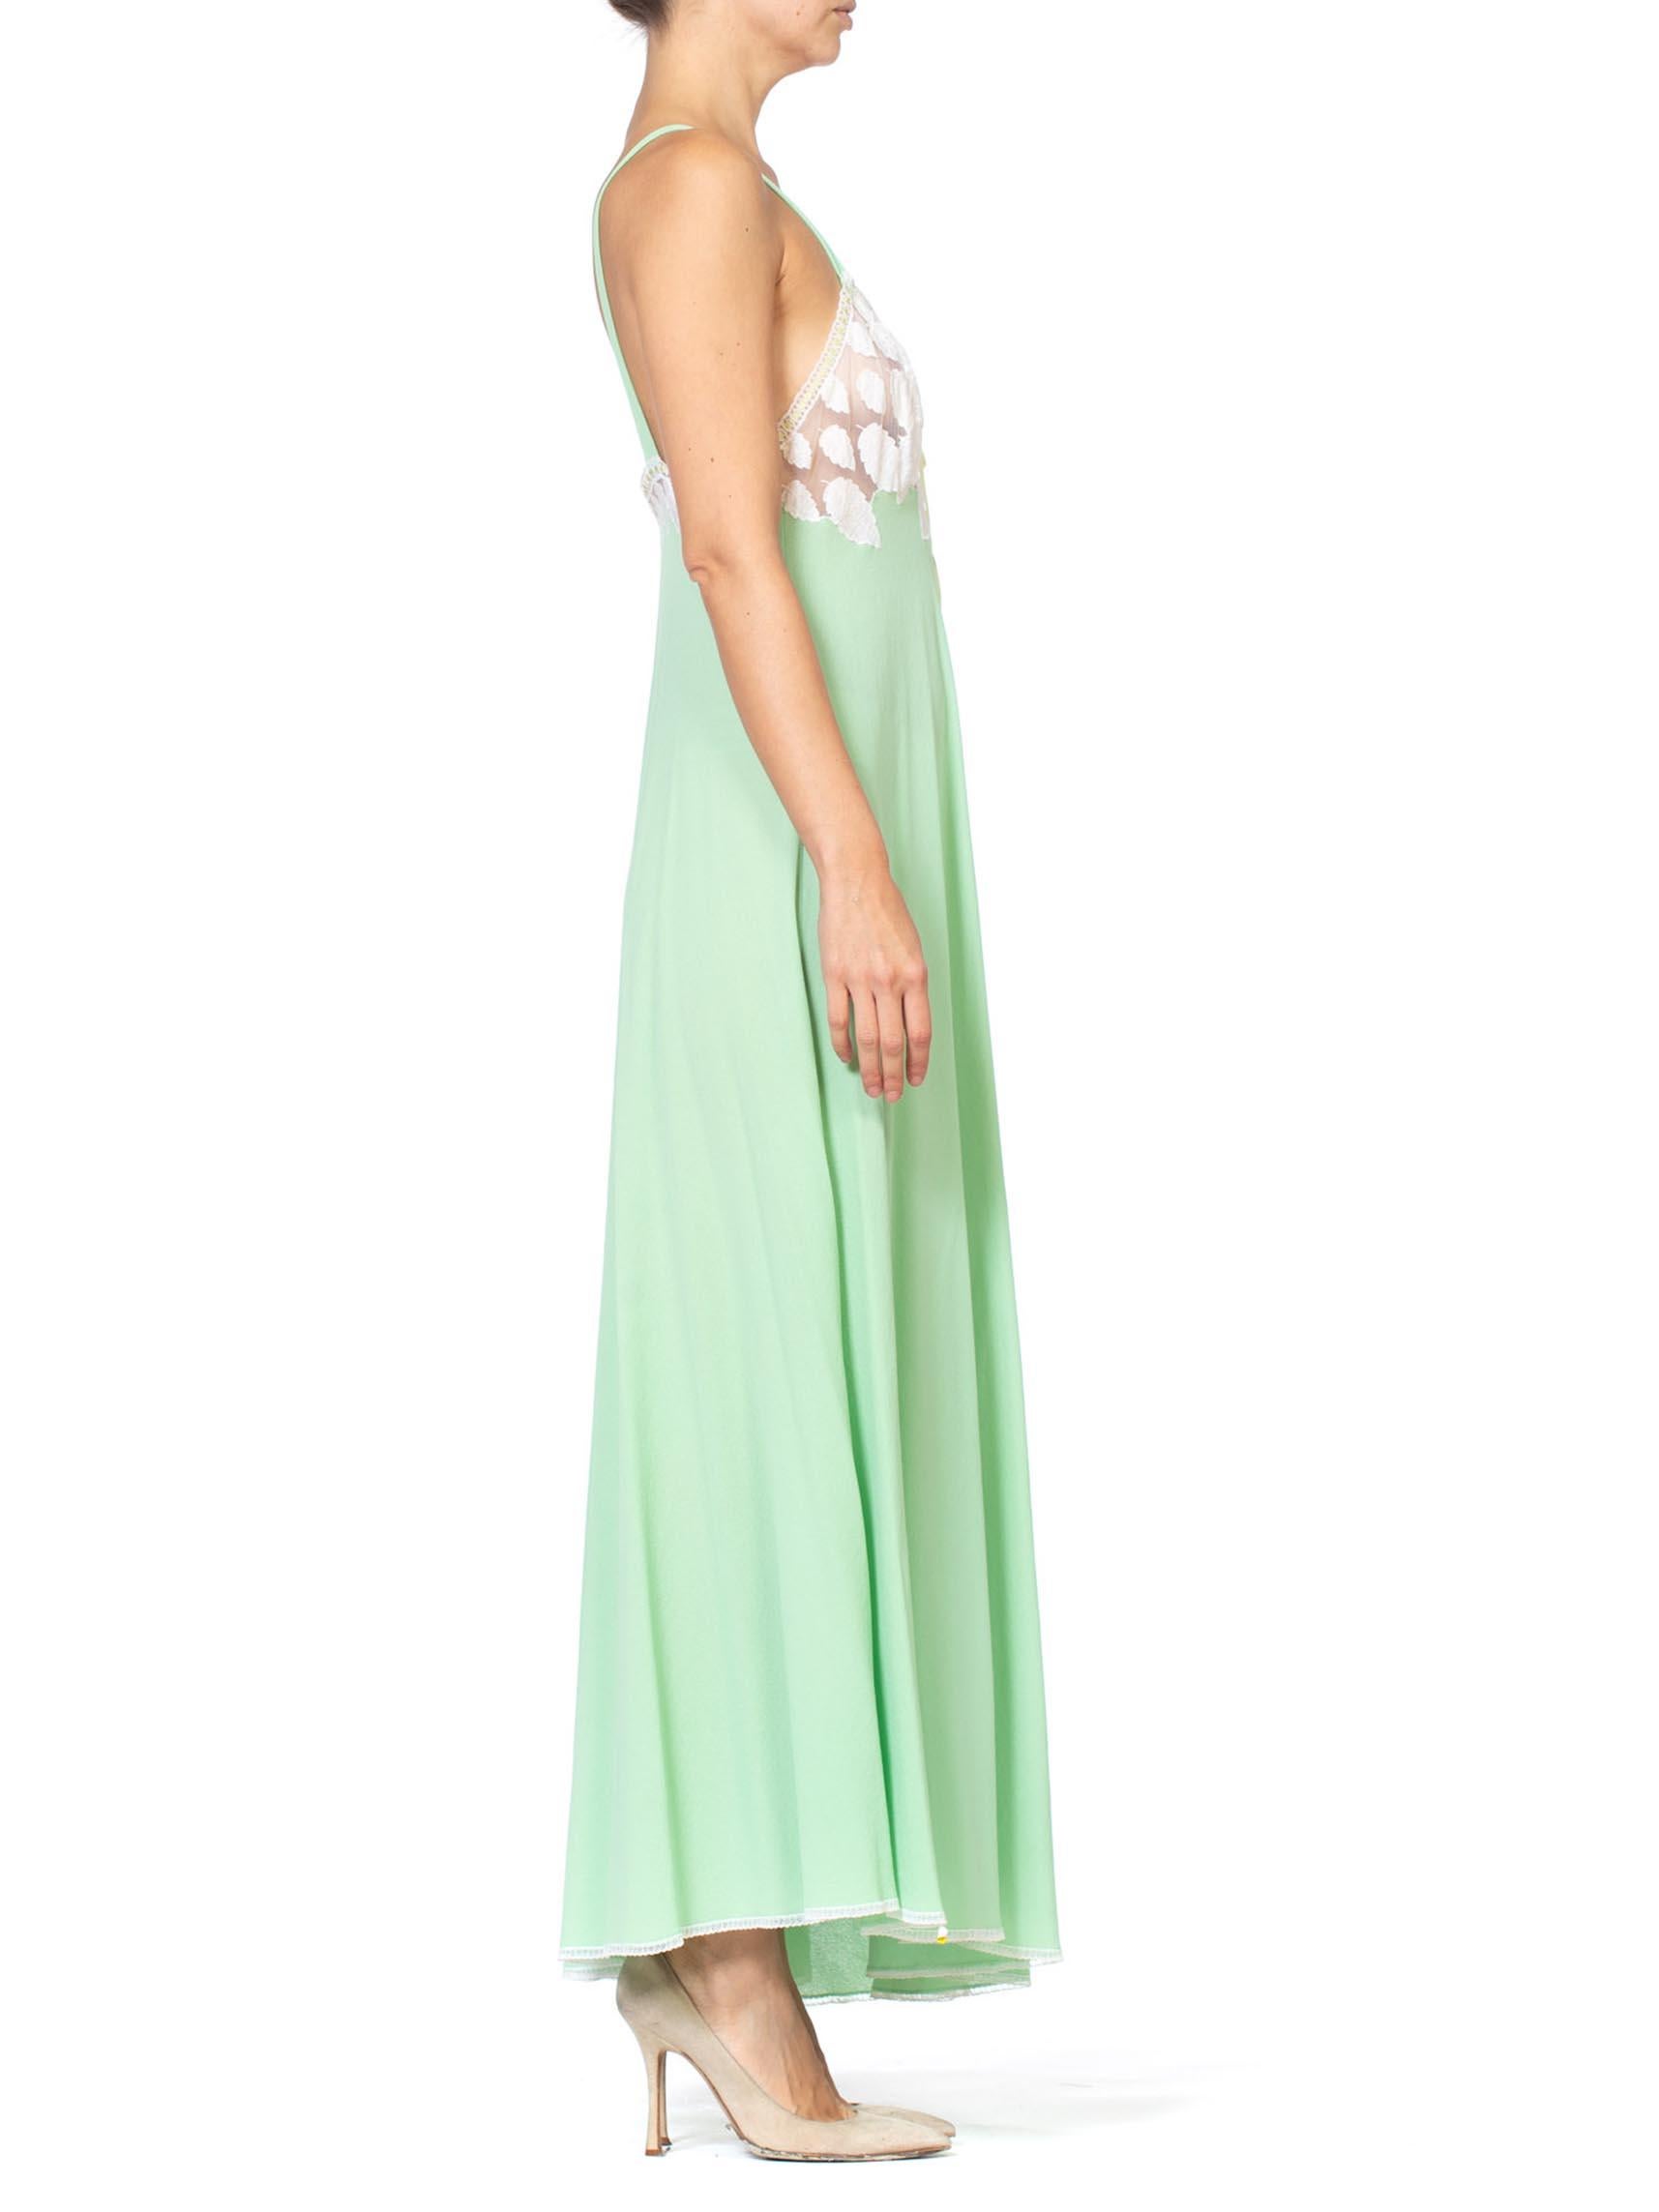 mint green slip dress